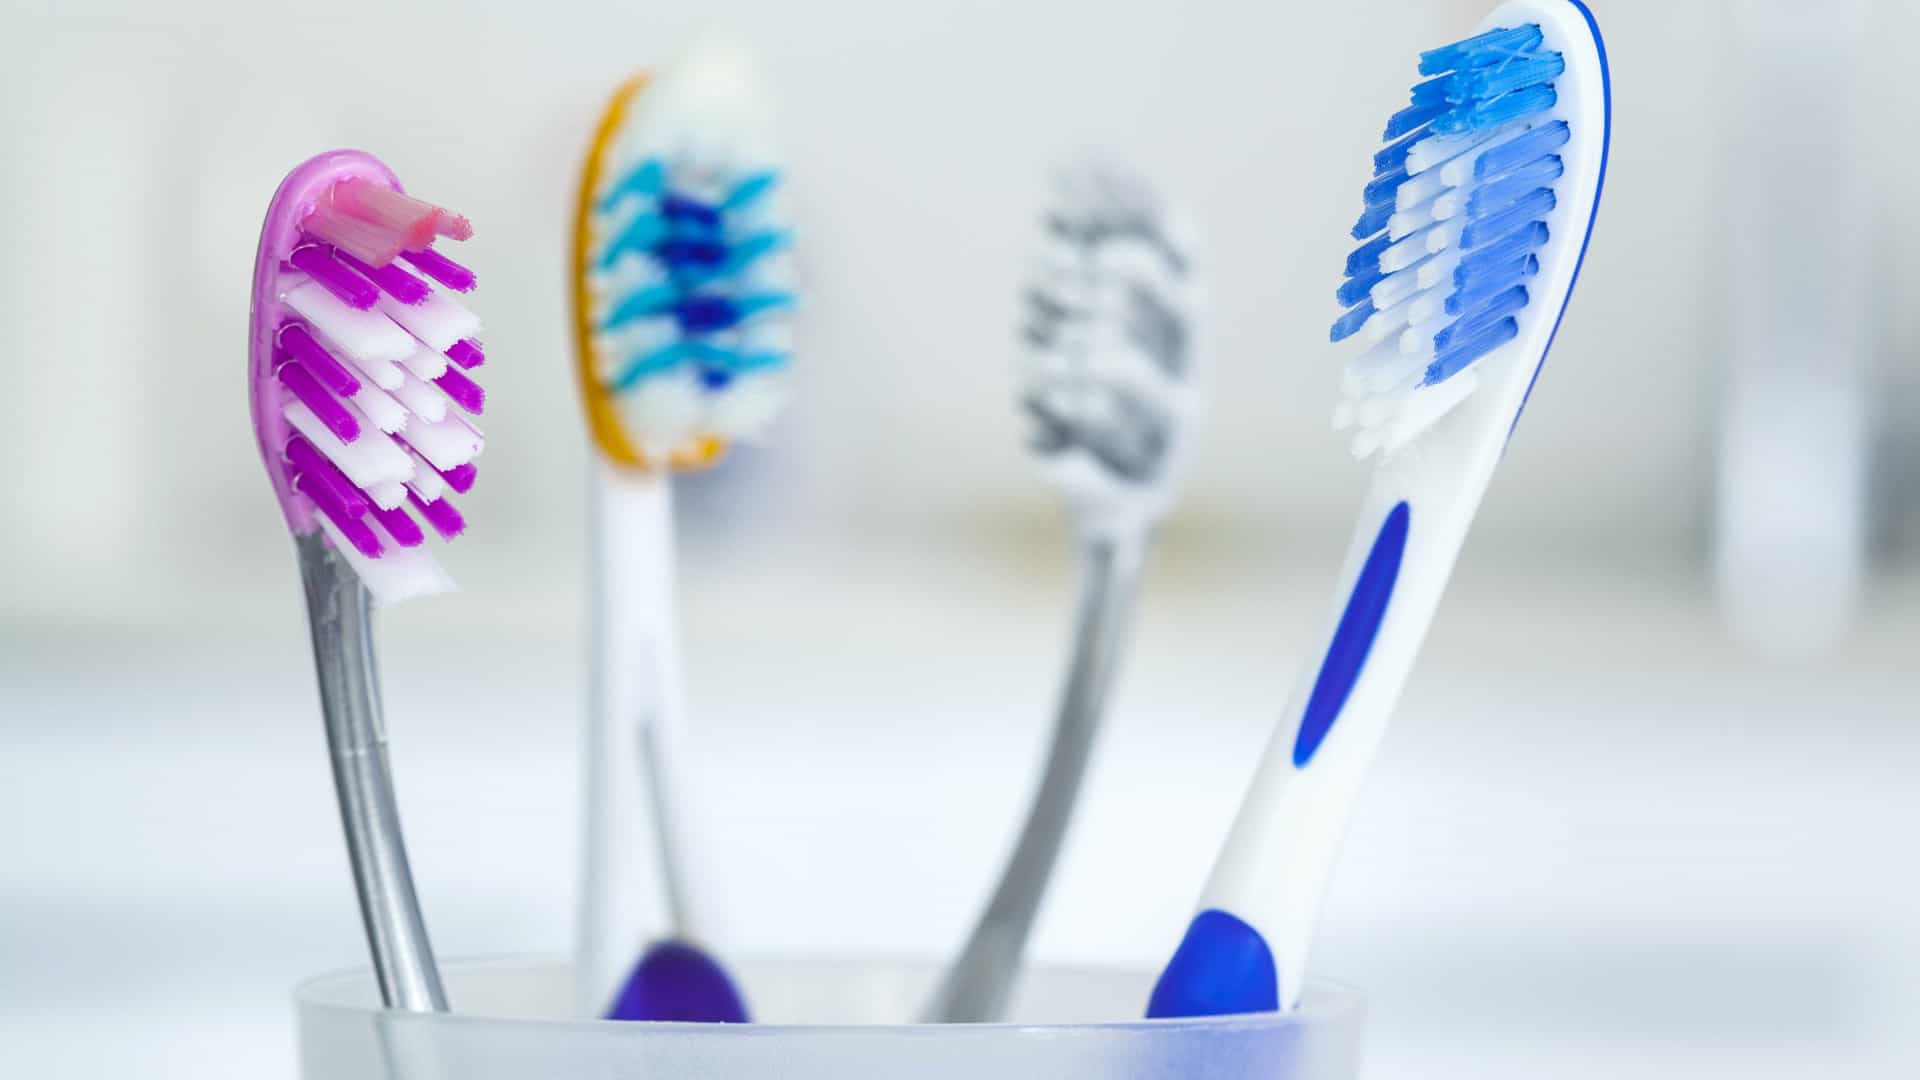 Como escolher escovas de dente?  Higiene bucal.